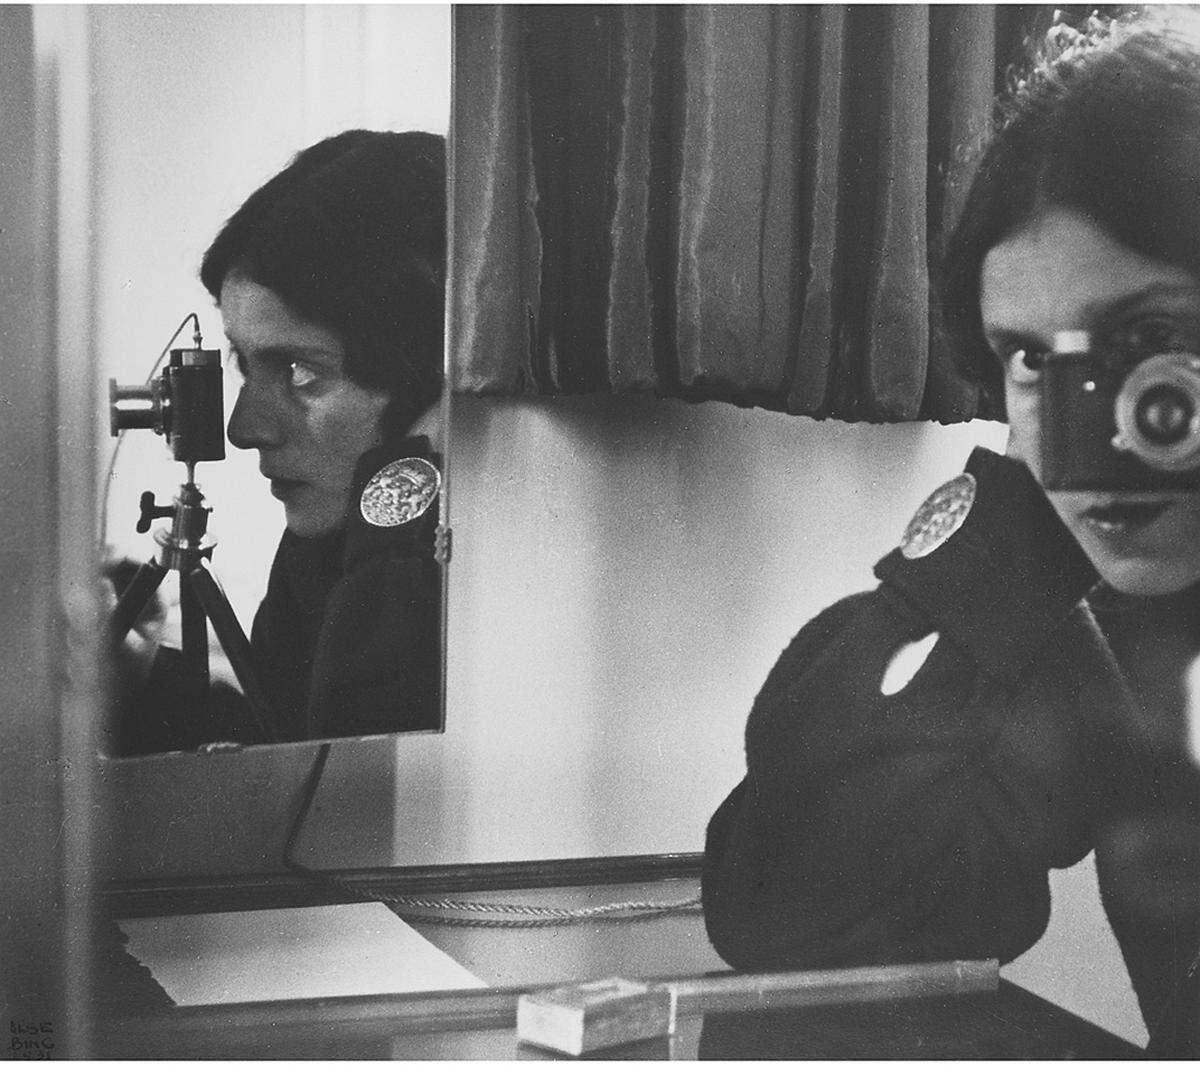 Der Fotoband versammelt viel Text und viele, viele Fotografien - auch die legendäre Capa-Aufnahme. Ilse Bing: "Selbstporträt in Spiegeln", 1931 (c) Leica Camera AG